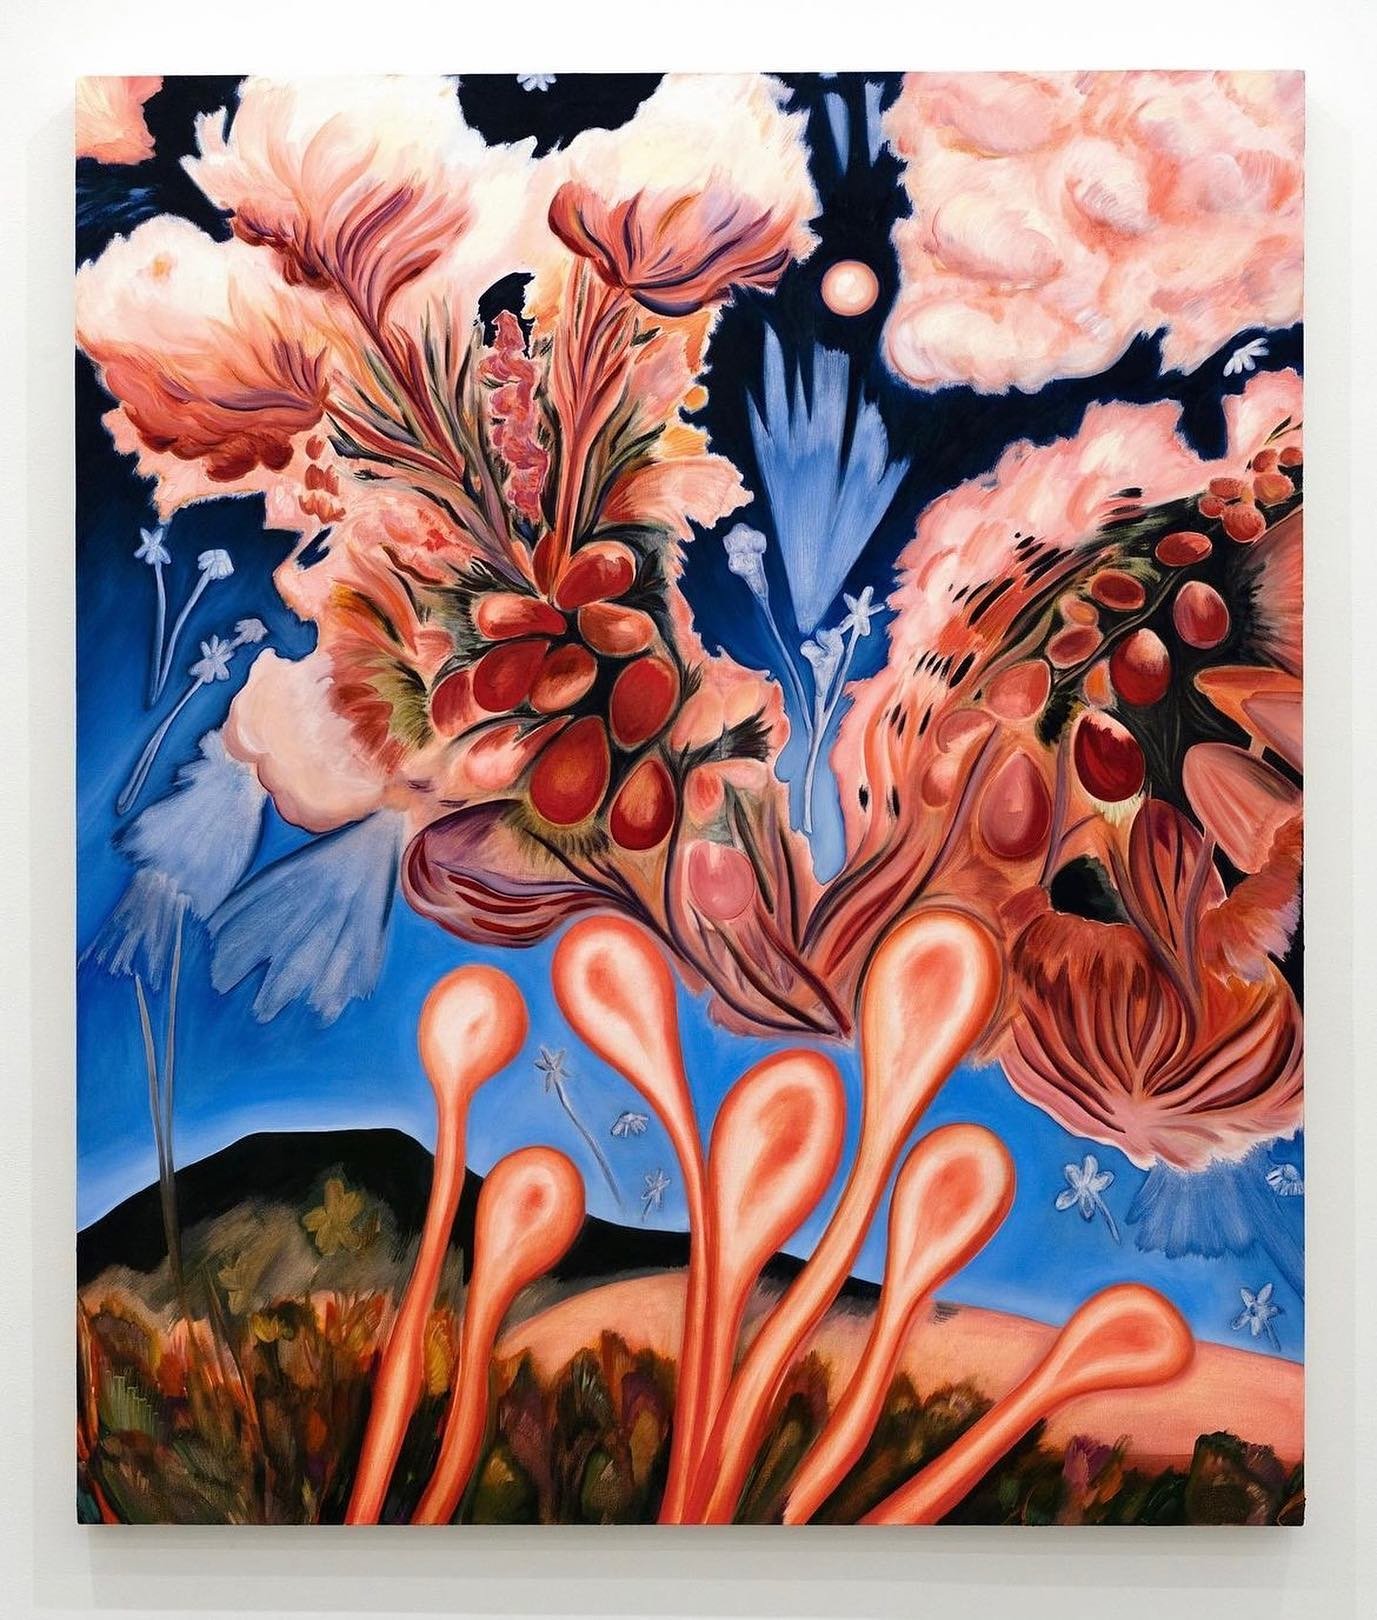 Freia Fain by Sabrina Piersol @sabpsl. 💌DM for feature.
-
-
-
-
-
-
-
-
-
-
-
-
-
-
-
-
-
-
-
-
#painters #paint #art #arts #paintings
#contemporaryart
#contemporarypainting #painting #abstraction #flowers #flowerspainting 
#naturepainting #peinture